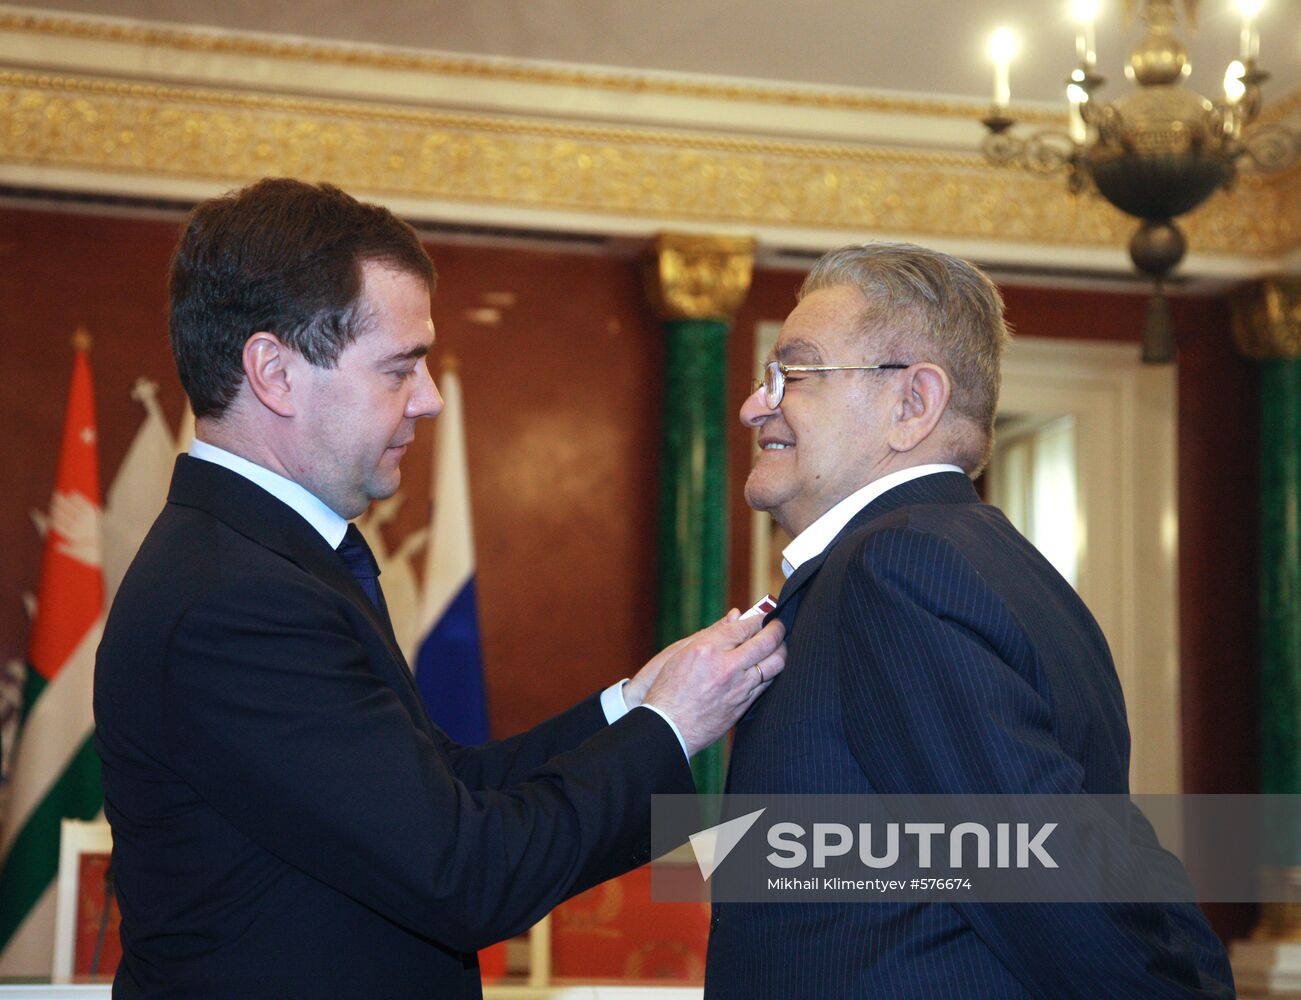 Dmitry Medvedev and Fazil Iskander